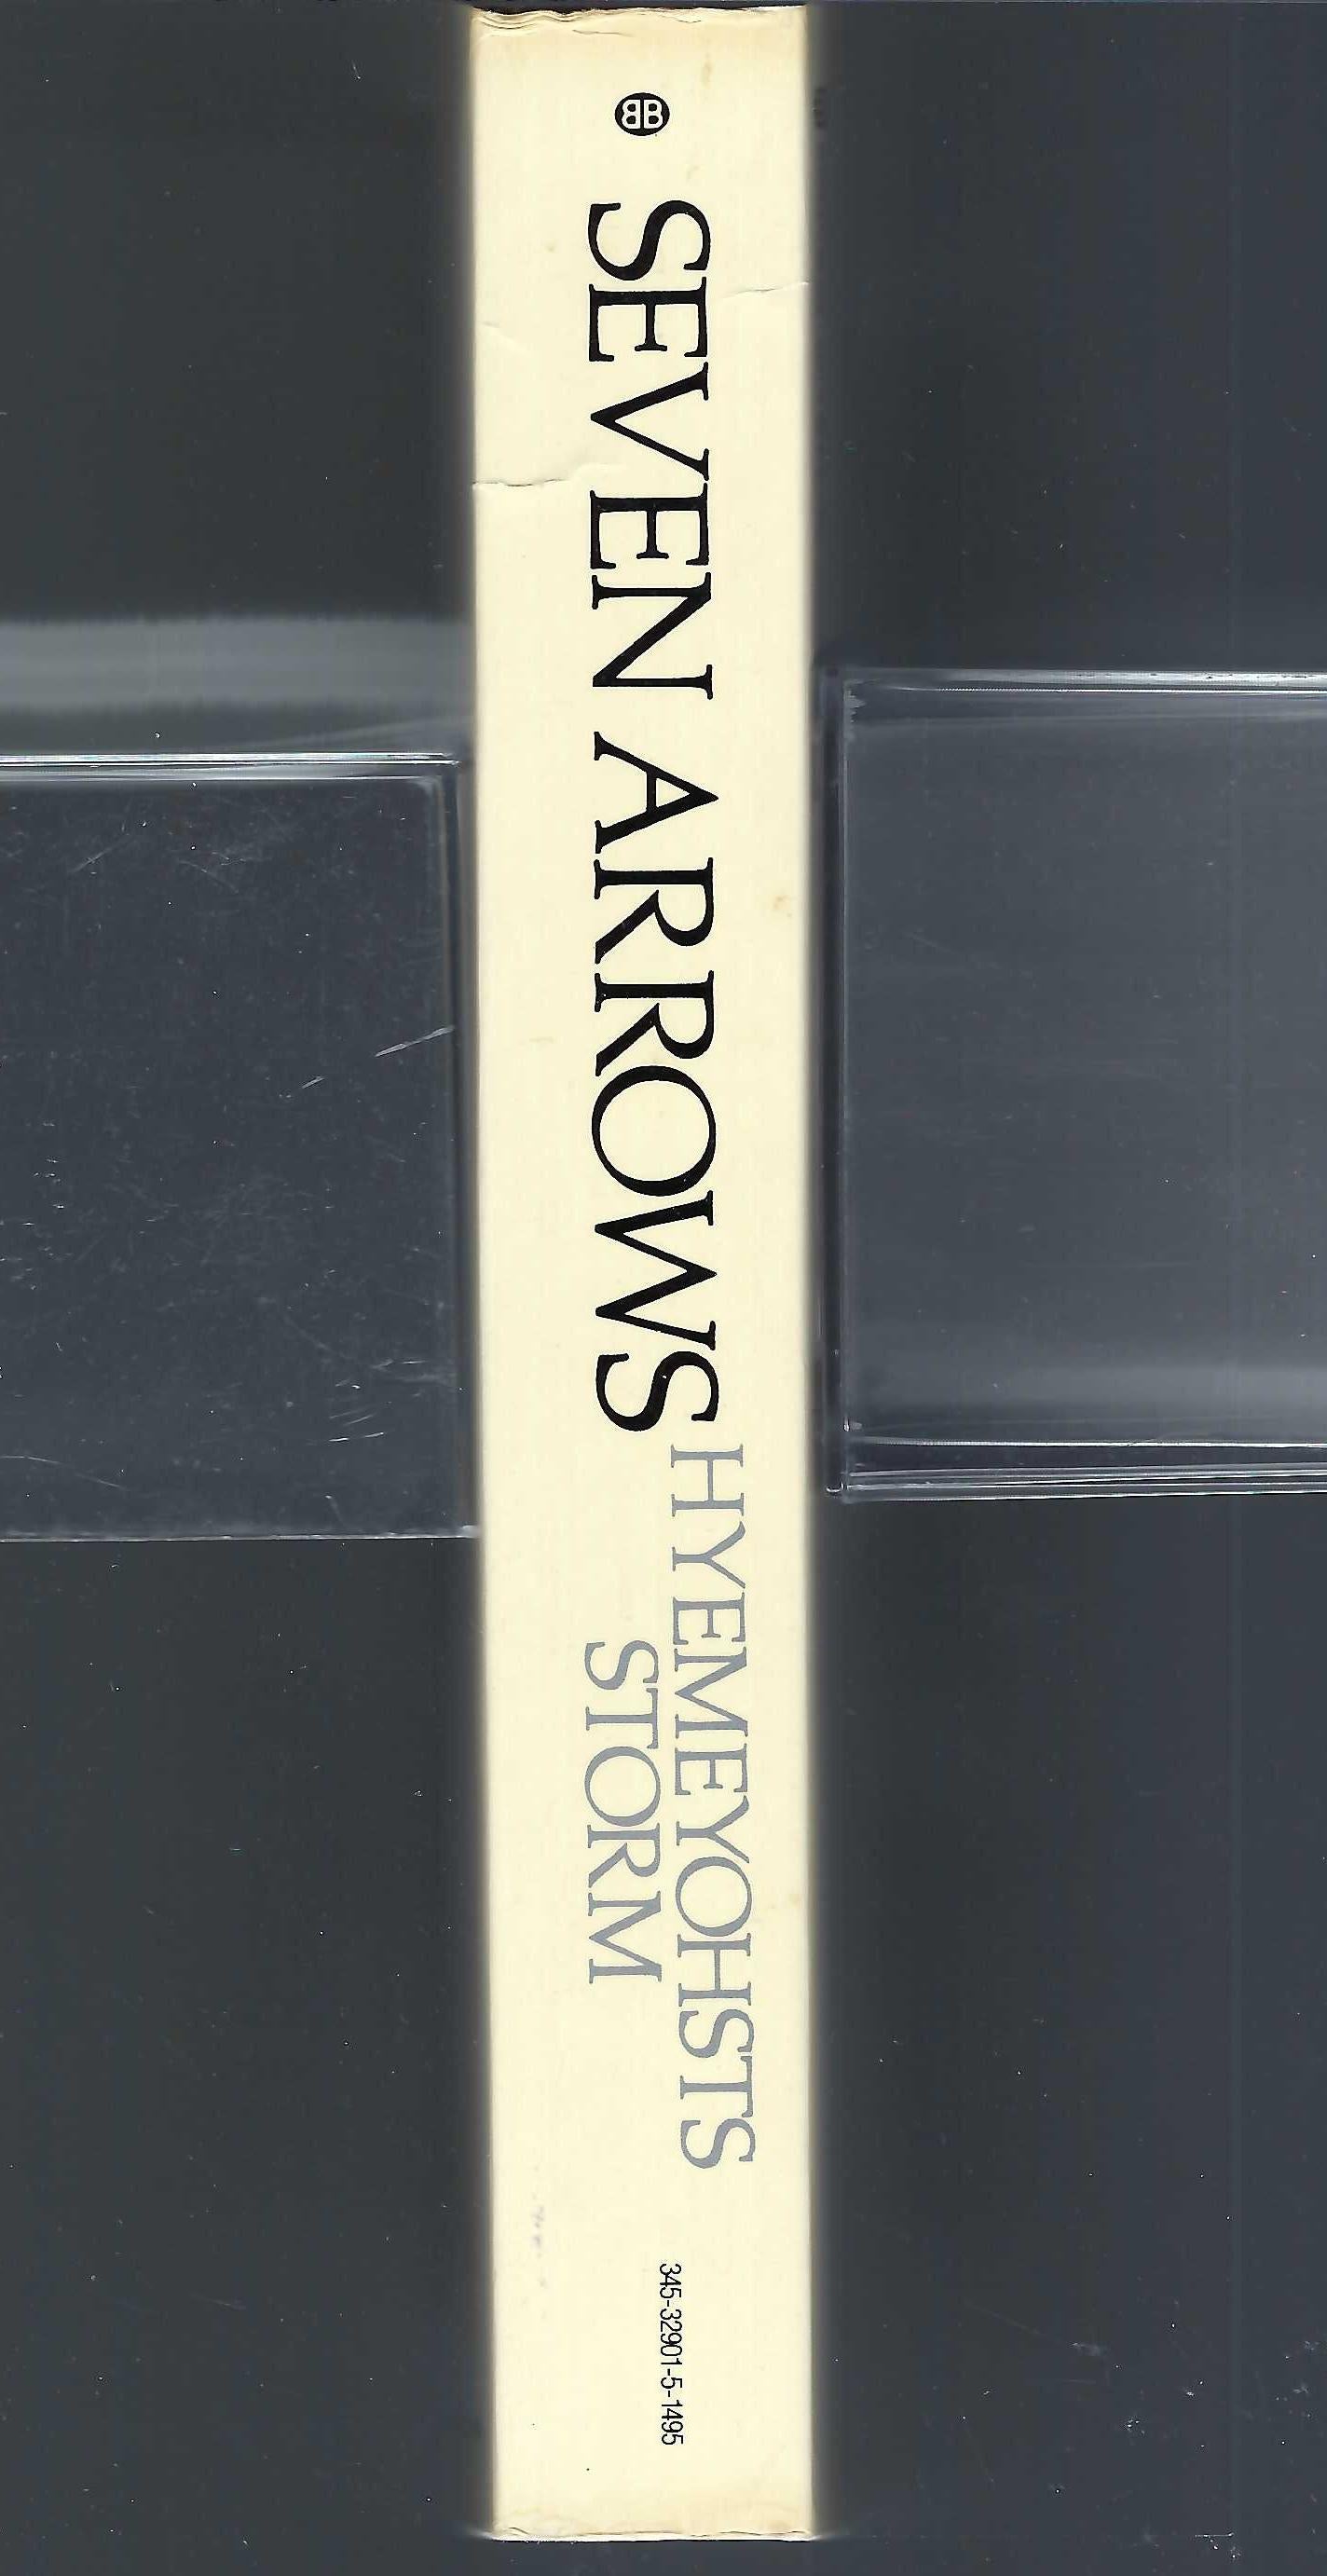 Seven Arrows spine